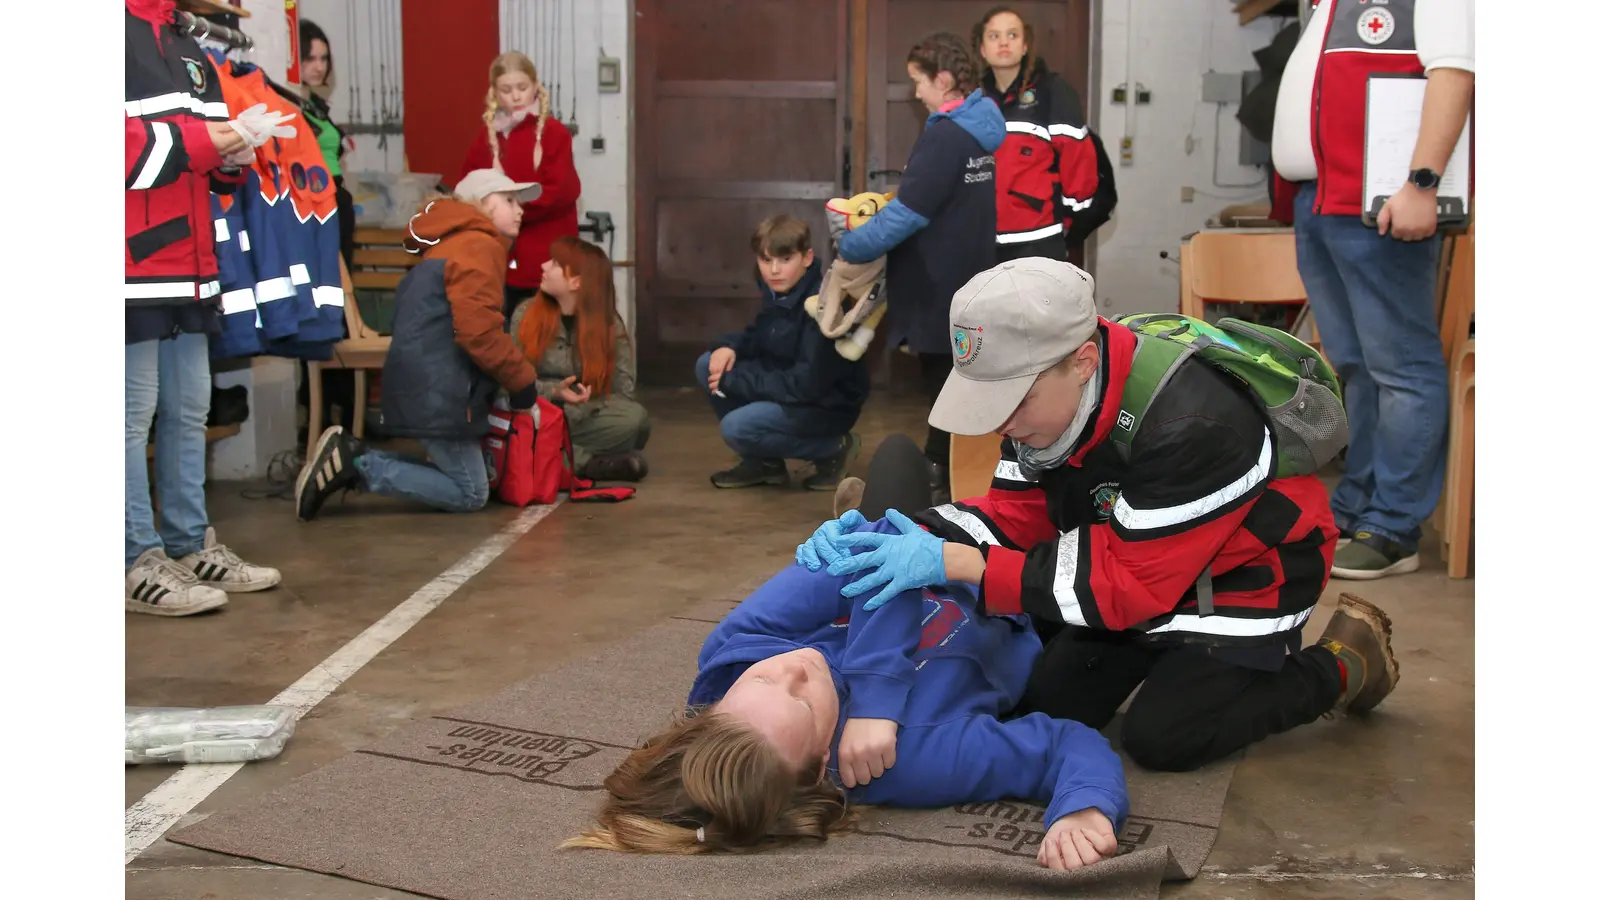 Darsteller spielen die Verletzten, die Jugendrotkreuzler müssen ihnen im Zusammenspiel als Team Hilfe leisten. (Foto: Borchers, Bastian)